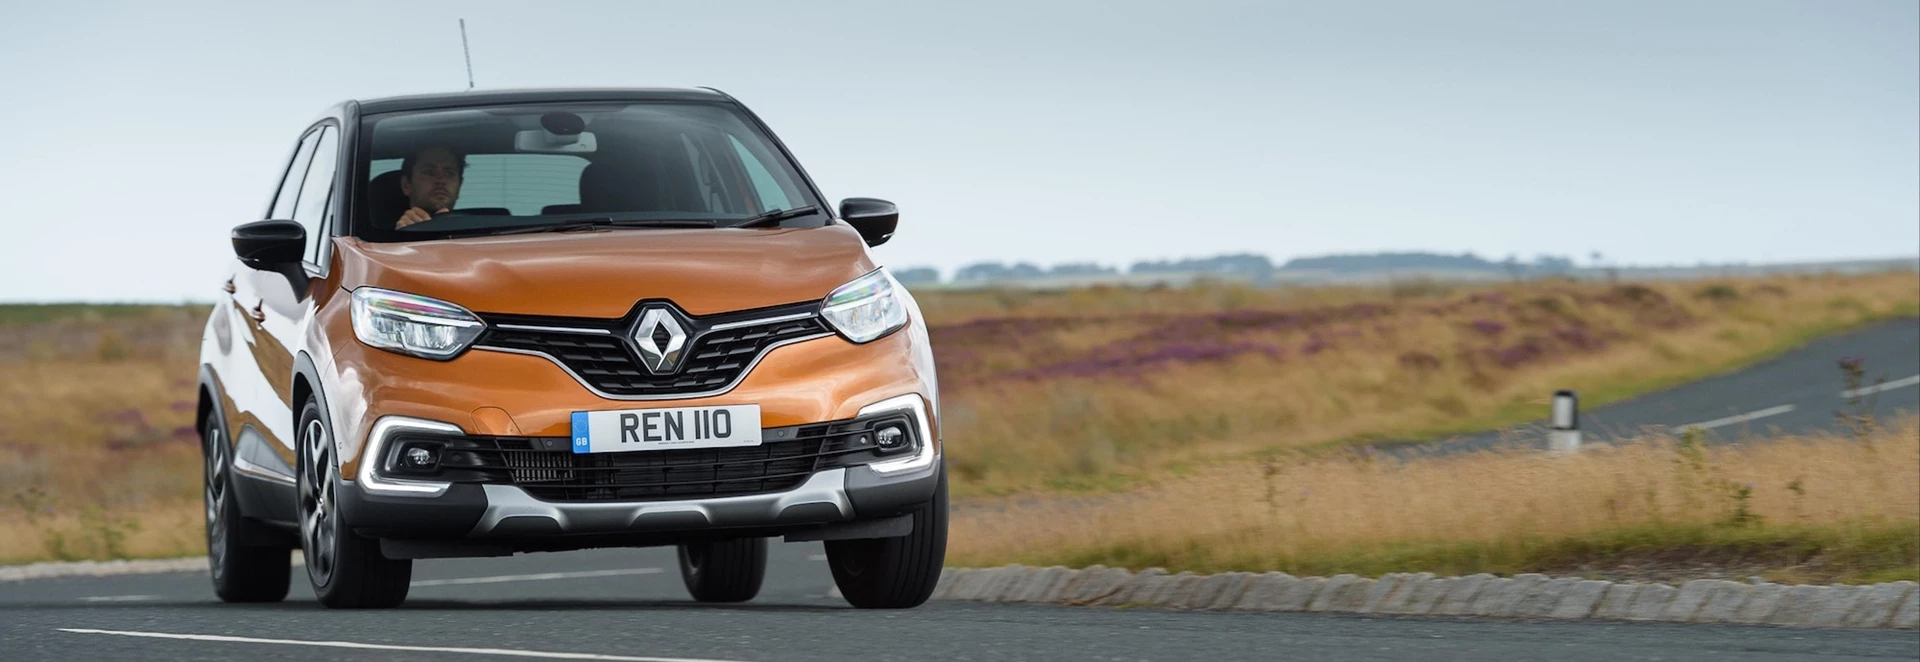 Renault Captur 2019 review 